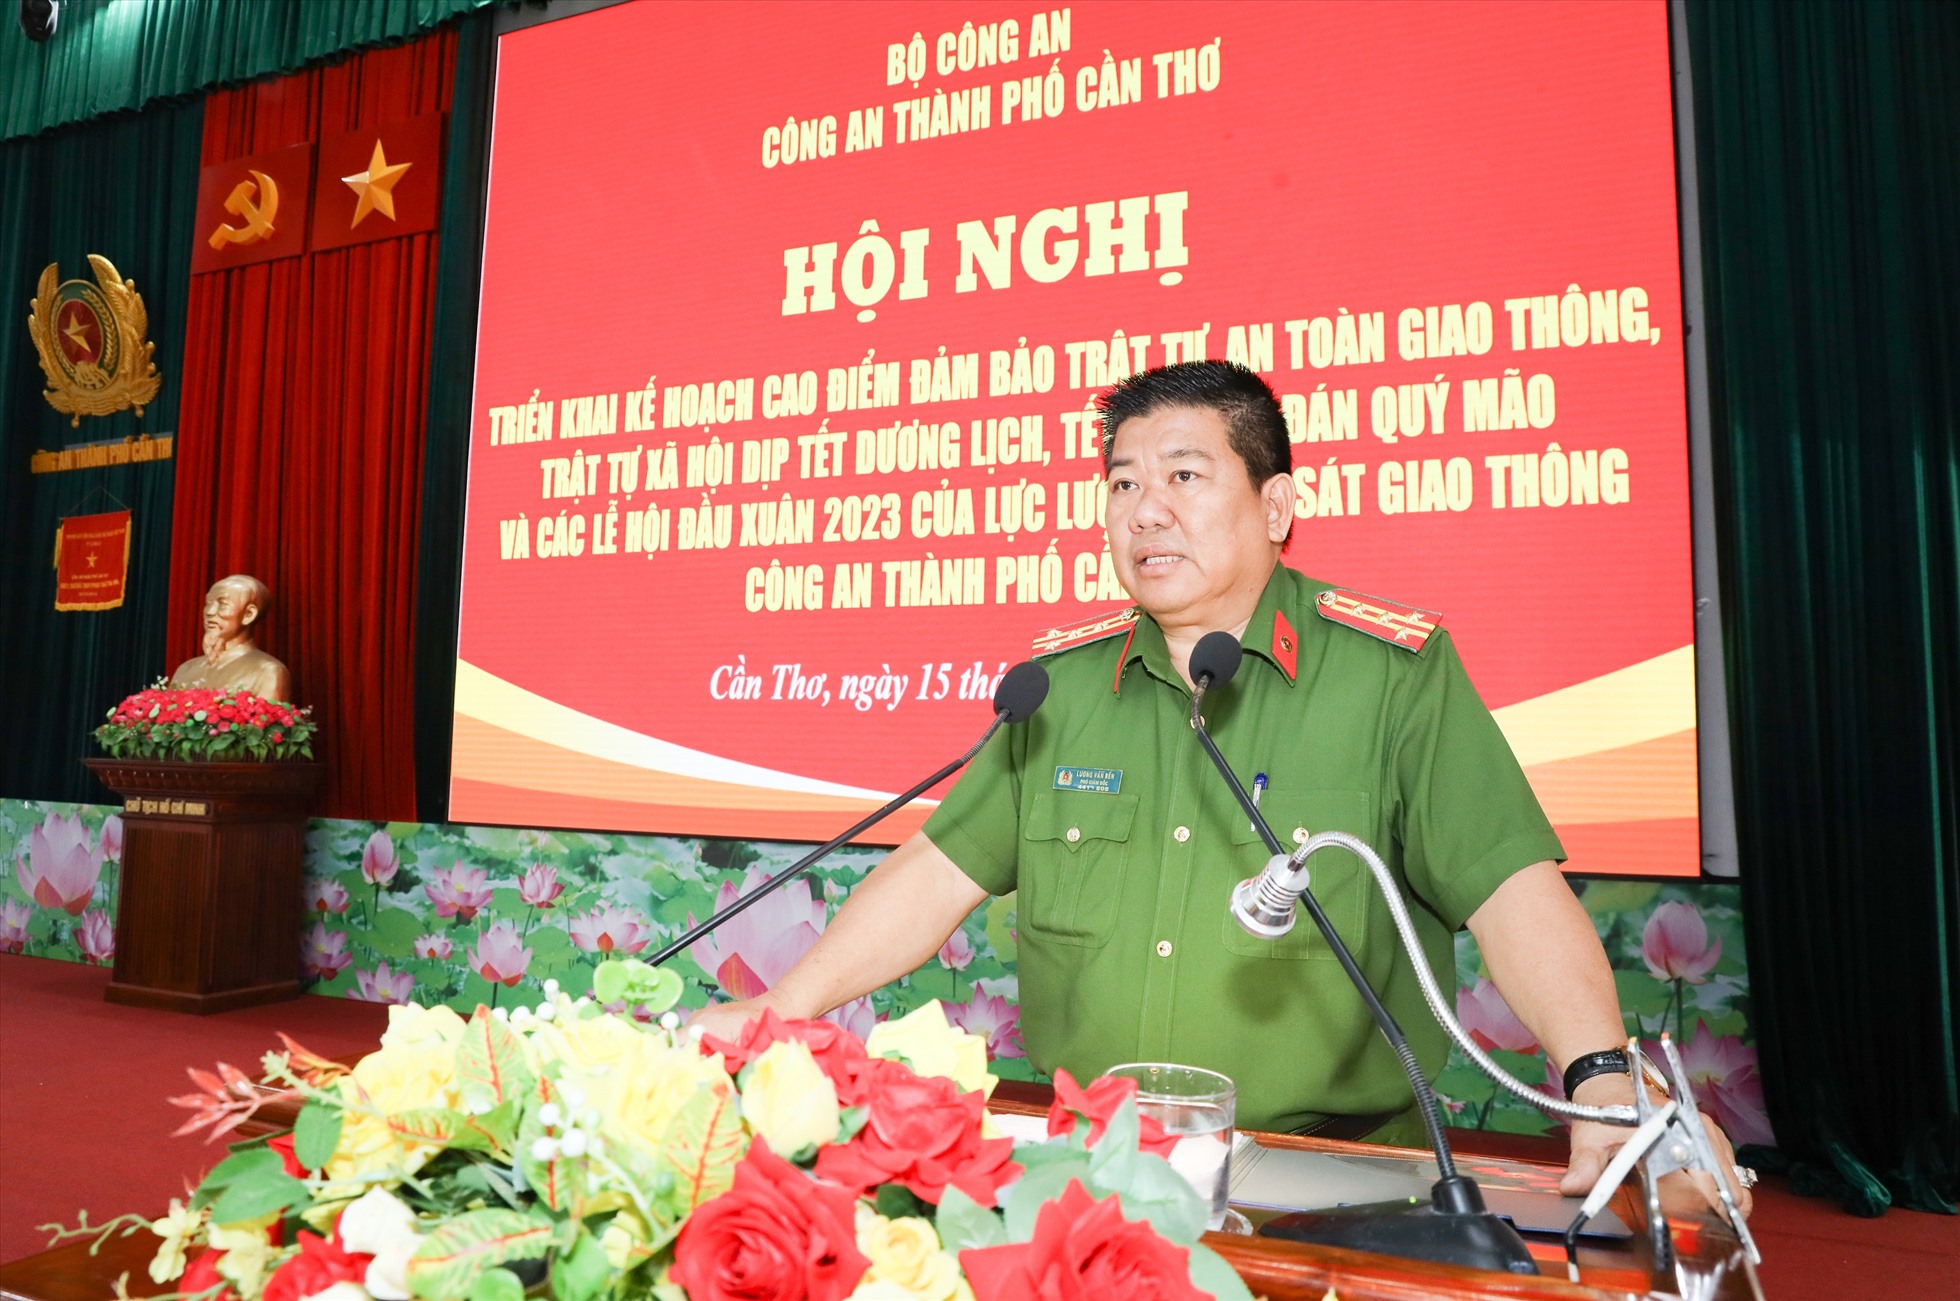 Đại tá Lương Văn Bền - Phó Giám đốc Công an thành phố Cần Thơ phát biểu chỉ đạo tại Hội nghị.